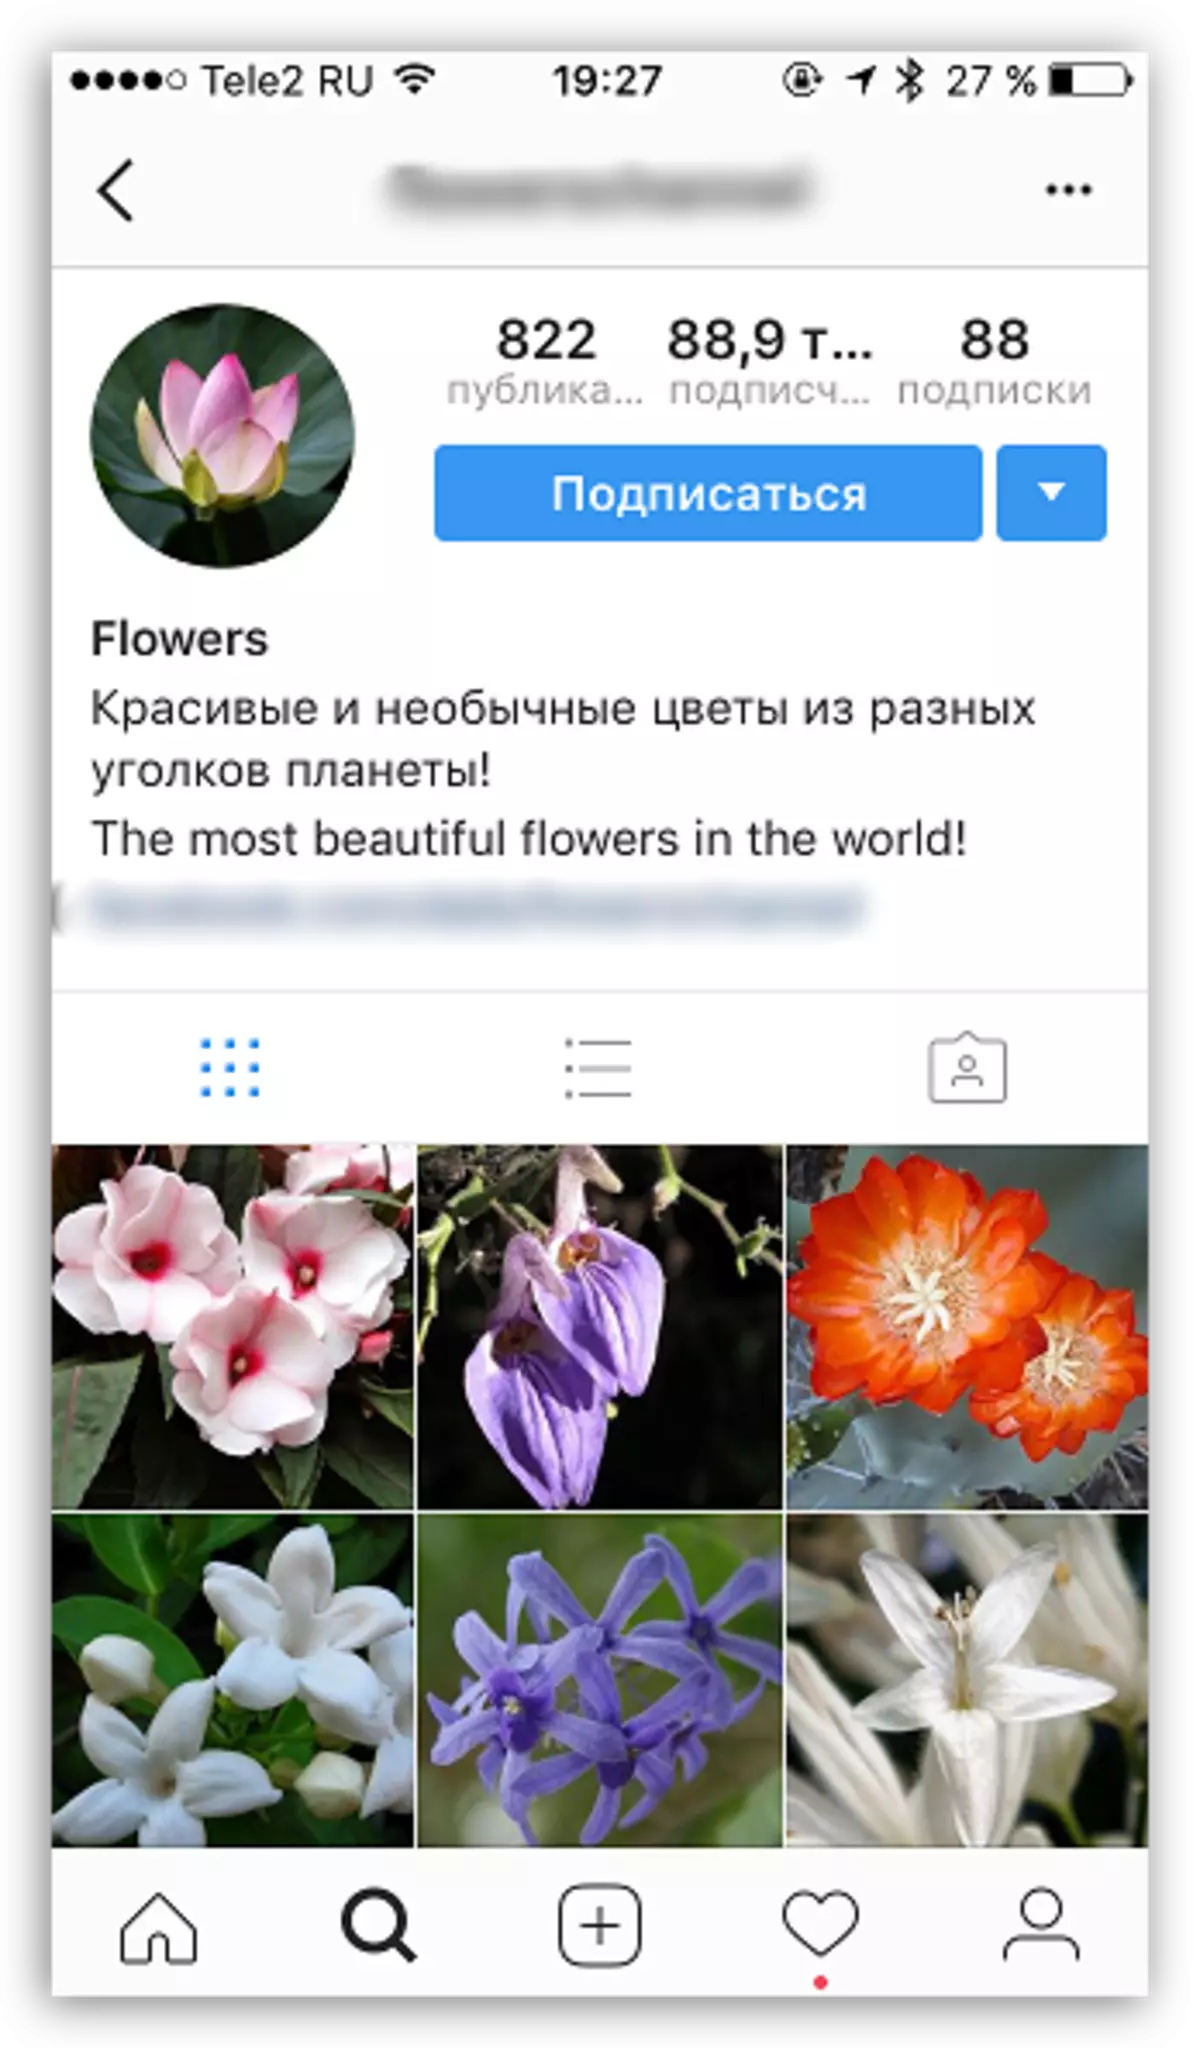 Memilih subjek profil di Instagram